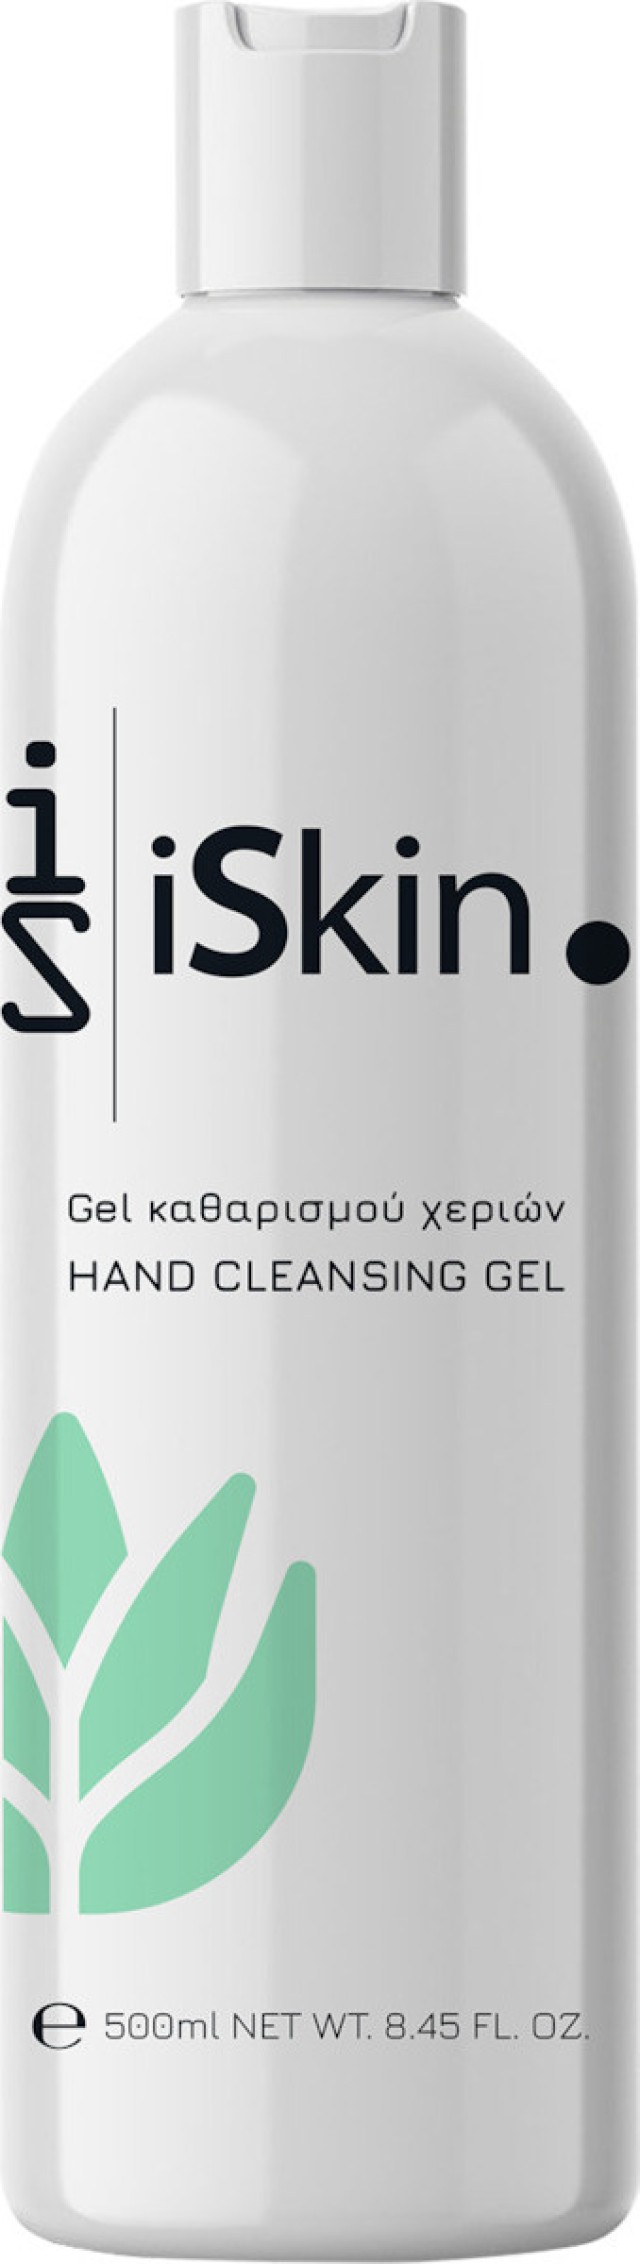 Dekaz iSkin Hand Cleansing Hand Cleaning Αντισηπτικό Gel Χεριών με 70% Αιθανόλη 500ml